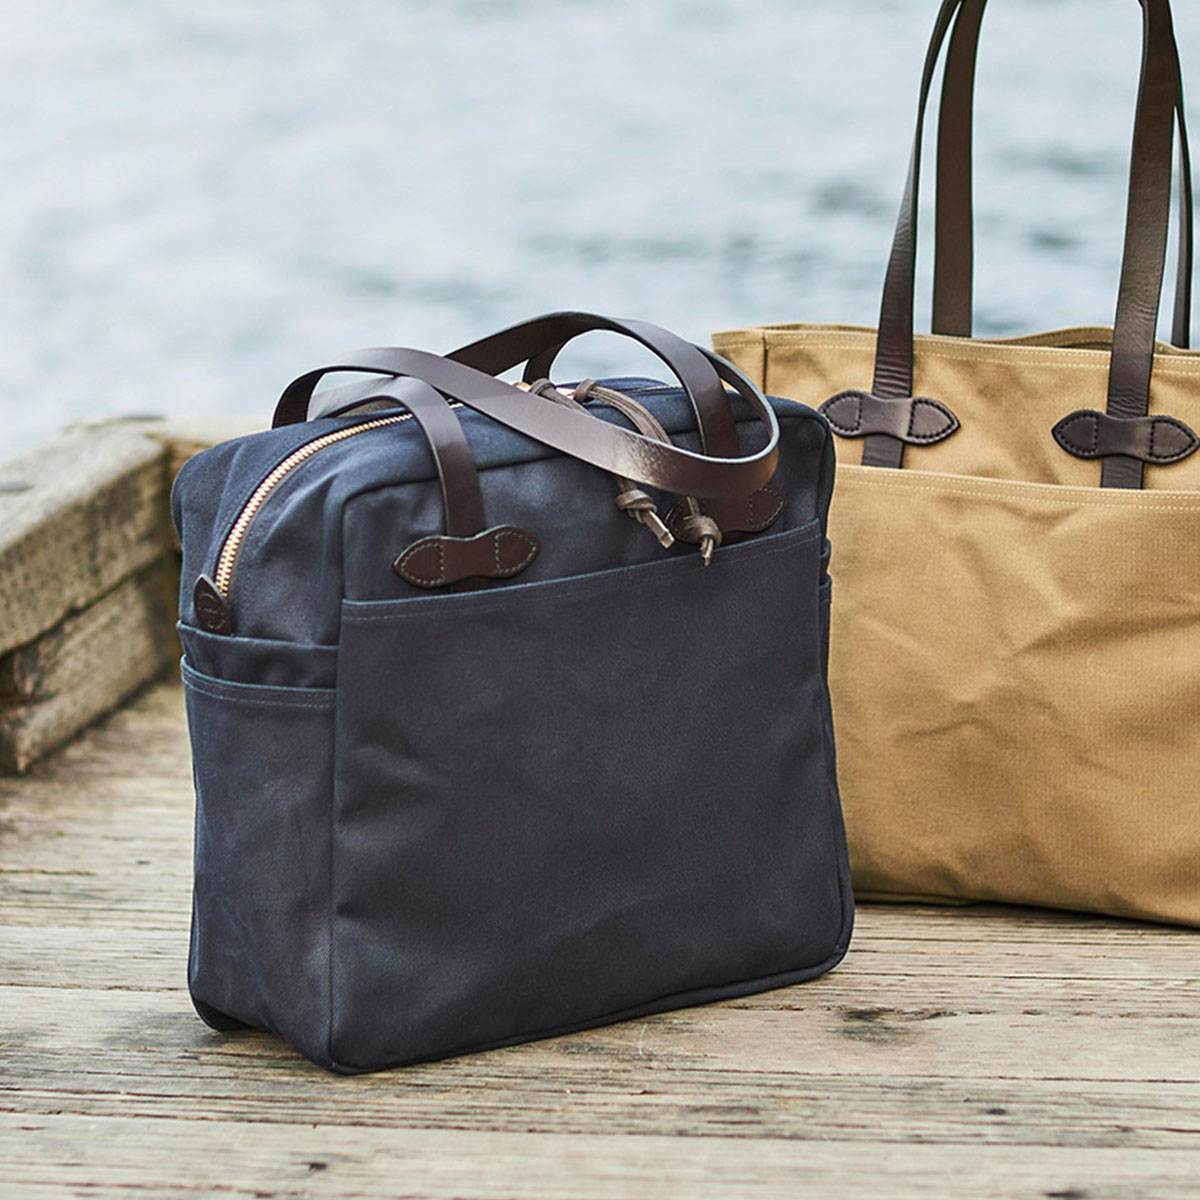 Filson Rugged Twill Tote Bag With Zipper Navy, gemaakt voor mannen en vrouwen die van gemak, stijl en kwaliteit houden